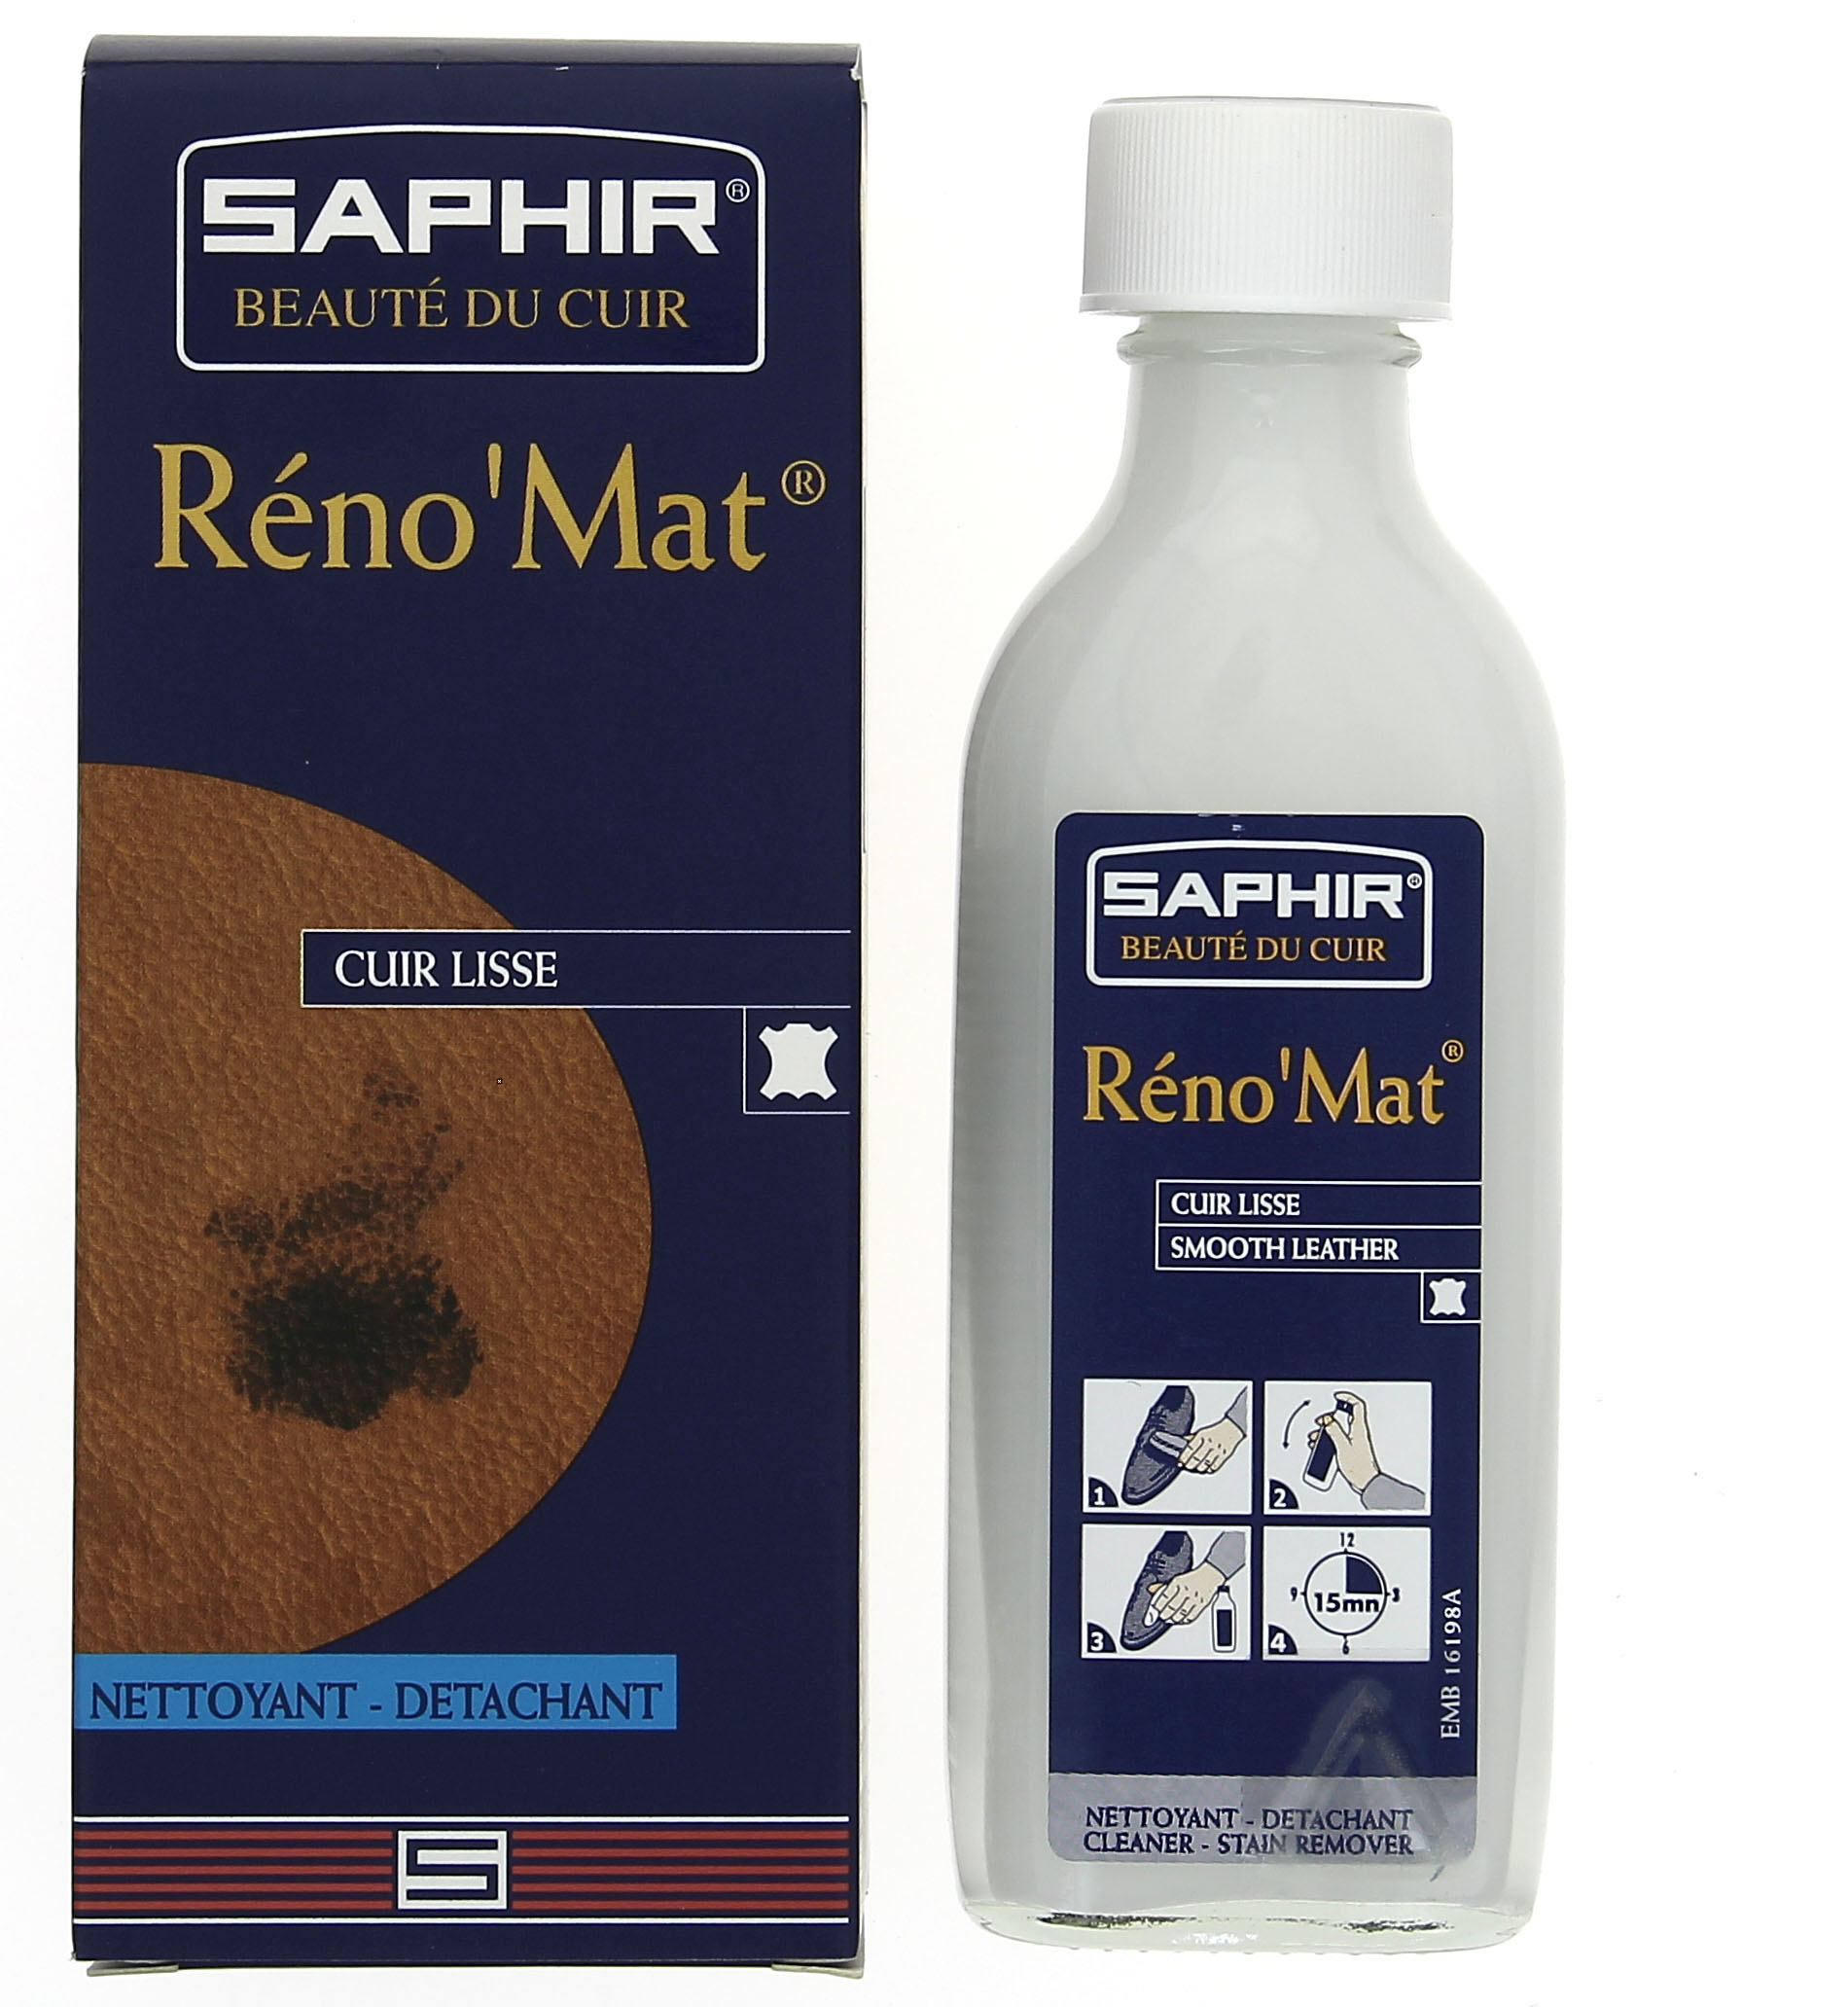 Reno mat. Saphir Reno mat. Чистящее средство сапфир для кожи. TM Saphir. Saphir шмешивание.